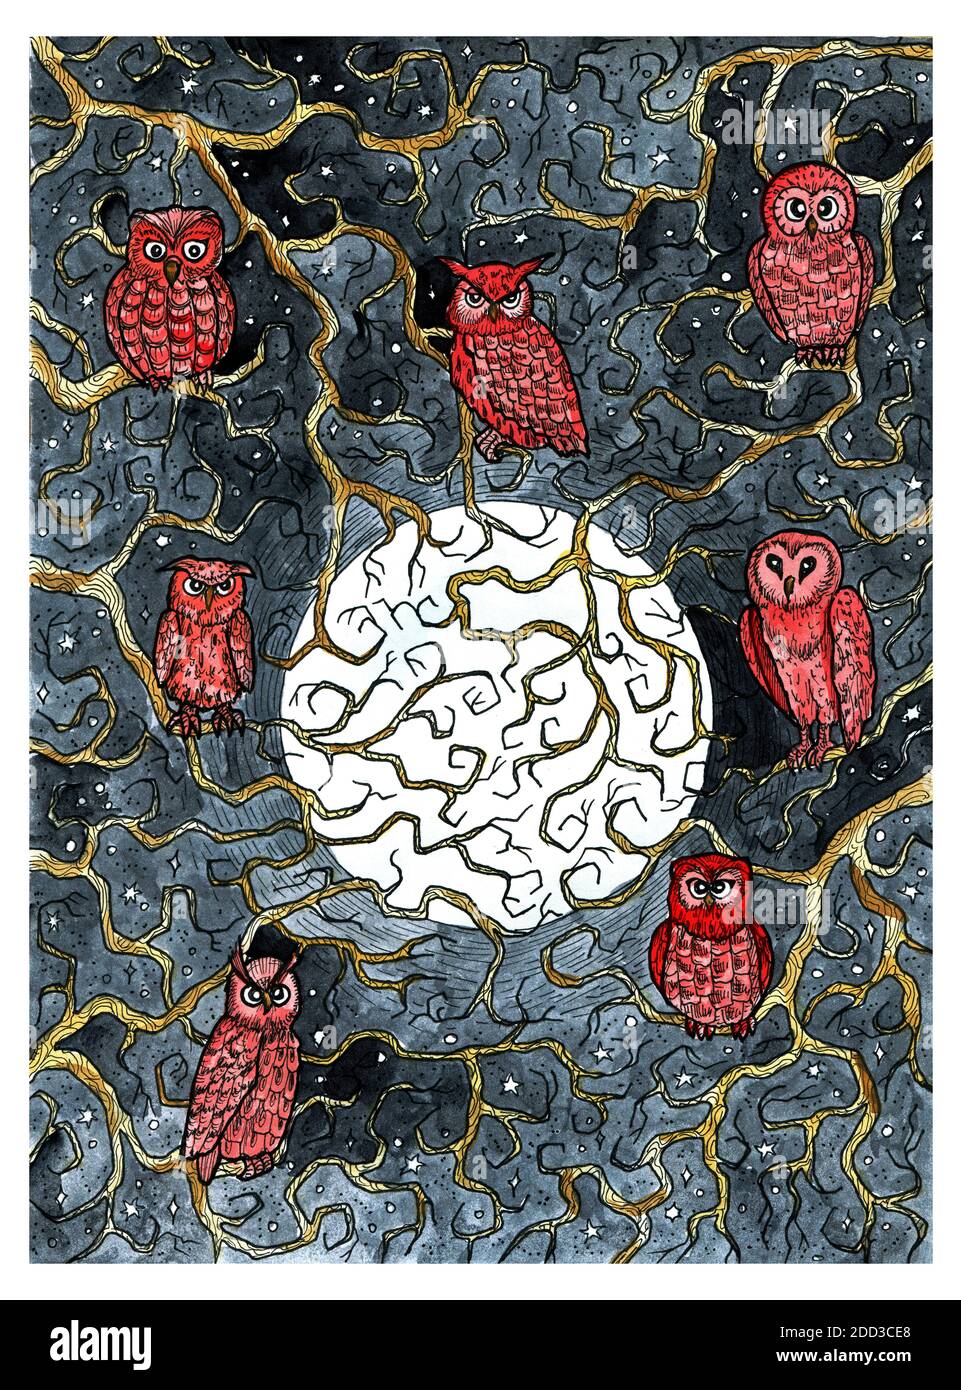 Hibou oiseaux assis sur les branches d'arbre contre pleine lune à la nuit étoilée. Illustration graphique colorée gravée. Fantaisie et dessin mystique. Gothique, prod Banque D'Images